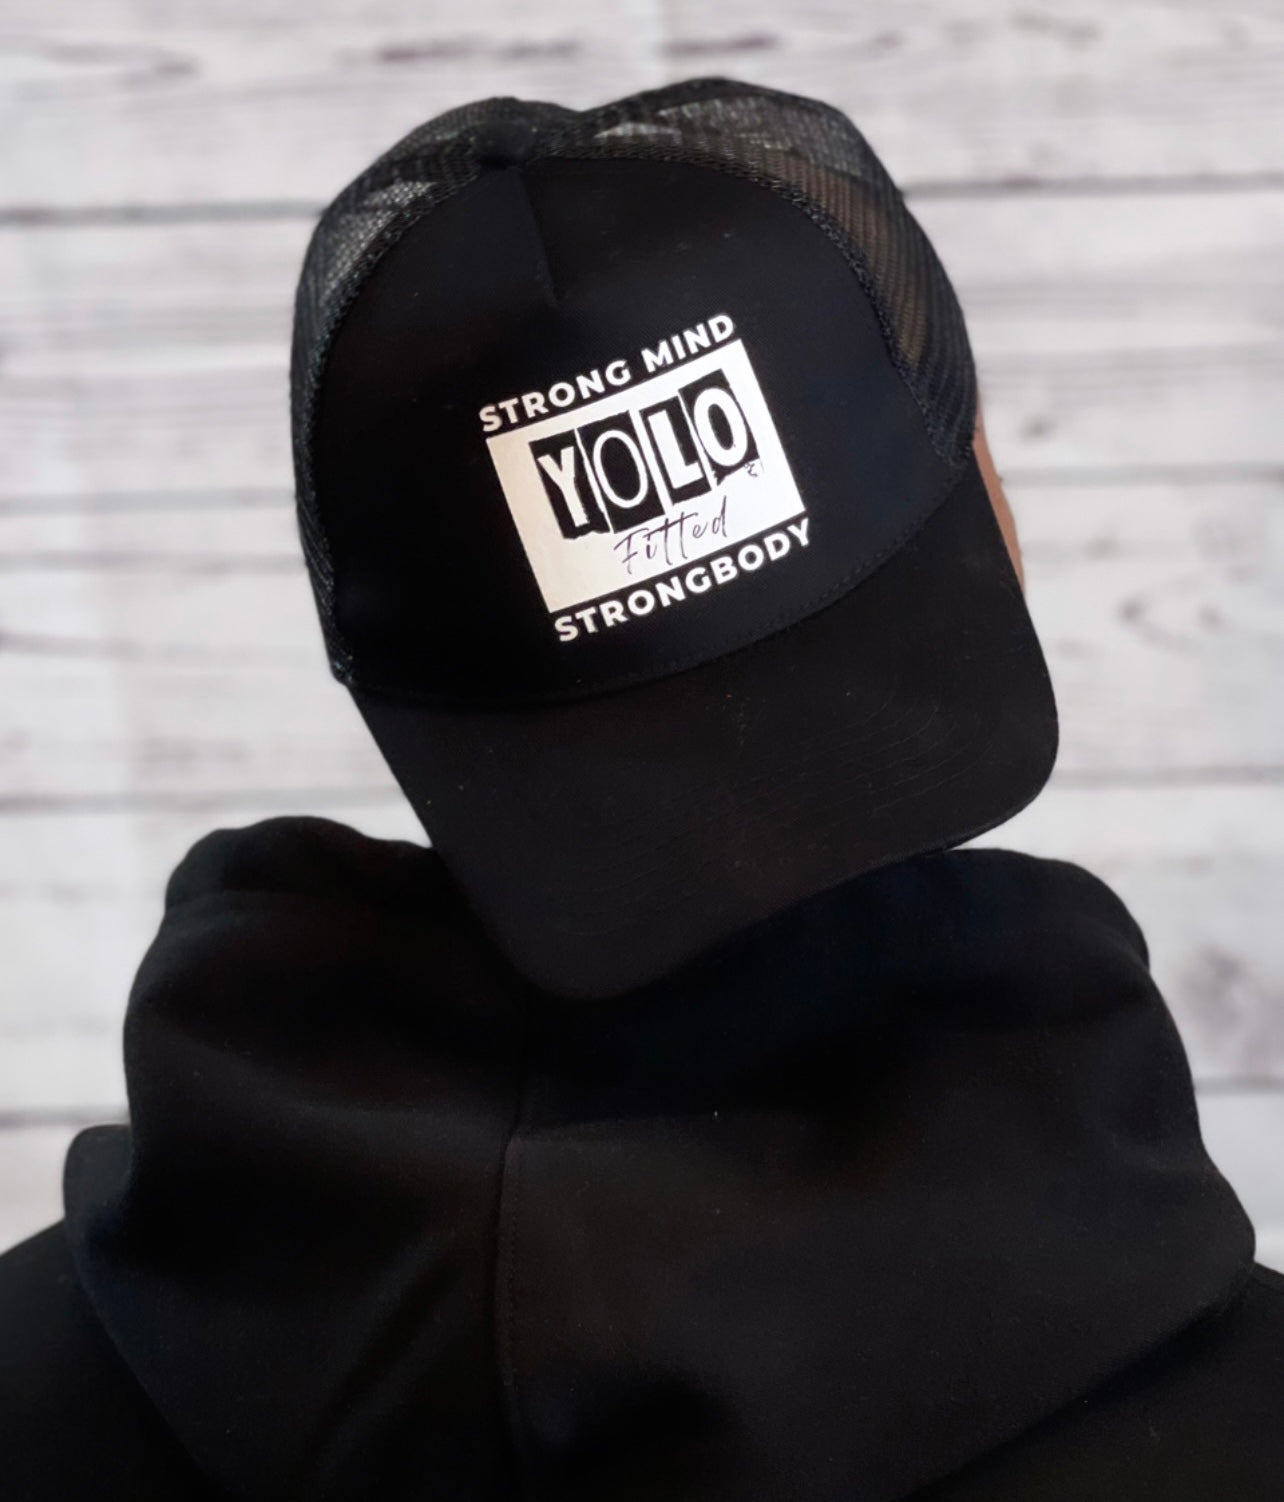 YOLO FITTED BLOCKED “YOLO” TRUCKER HAT